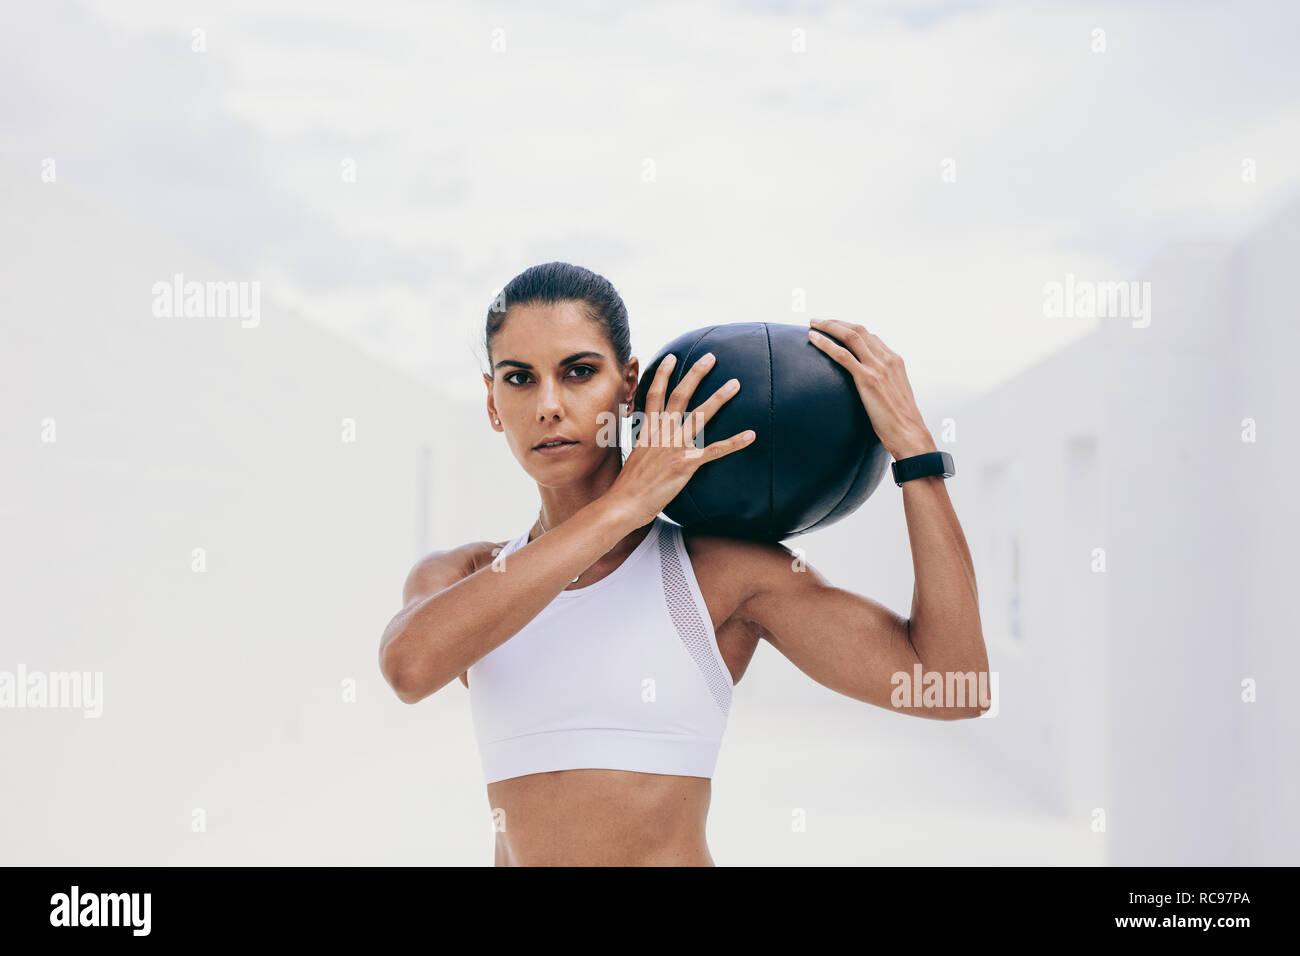 Fitnesstraining-Frau, die einen Medizinball auf der Schulter hält. Sportlerin trainiert mit einem Medizinball. Stockfoto